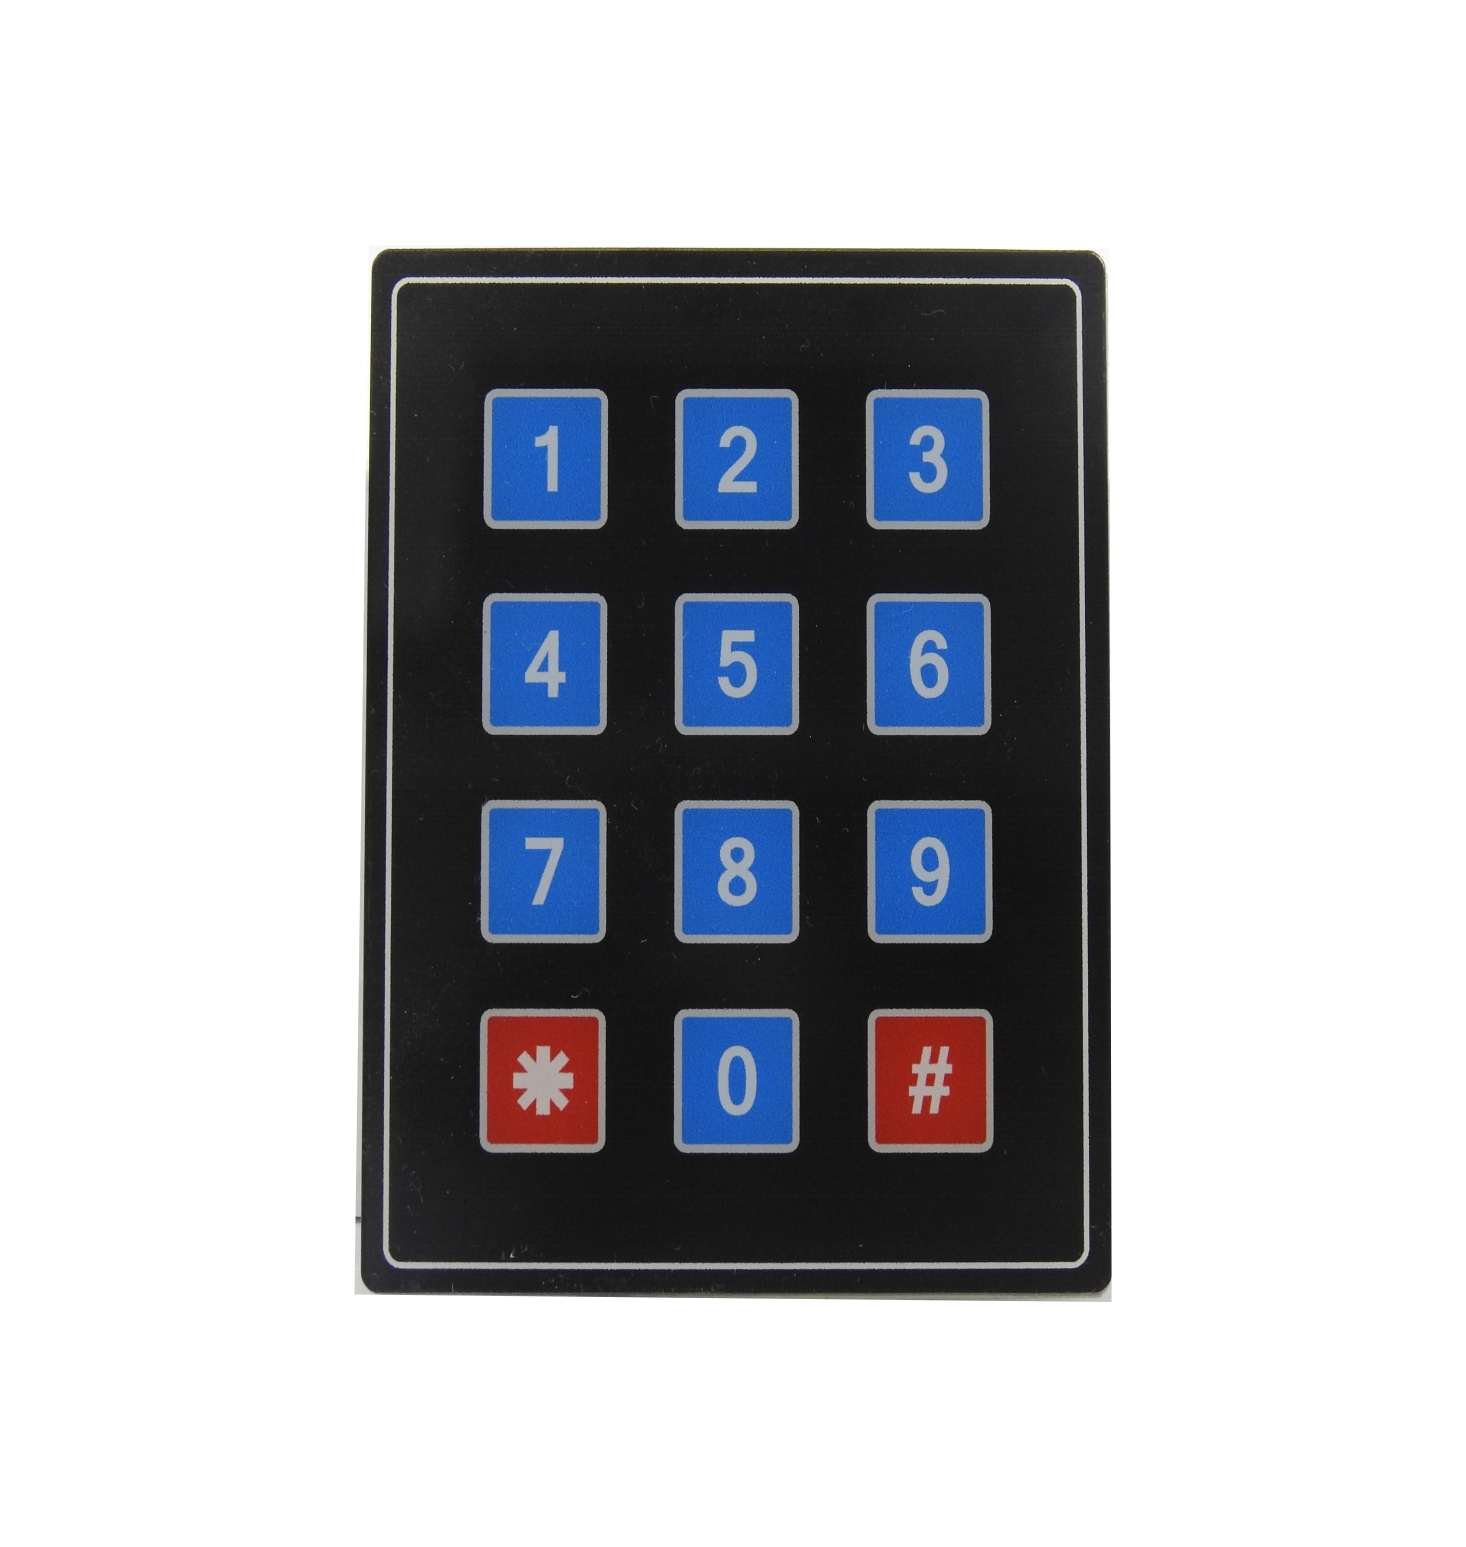 3x4 Matrix Capacitive Touch keypad